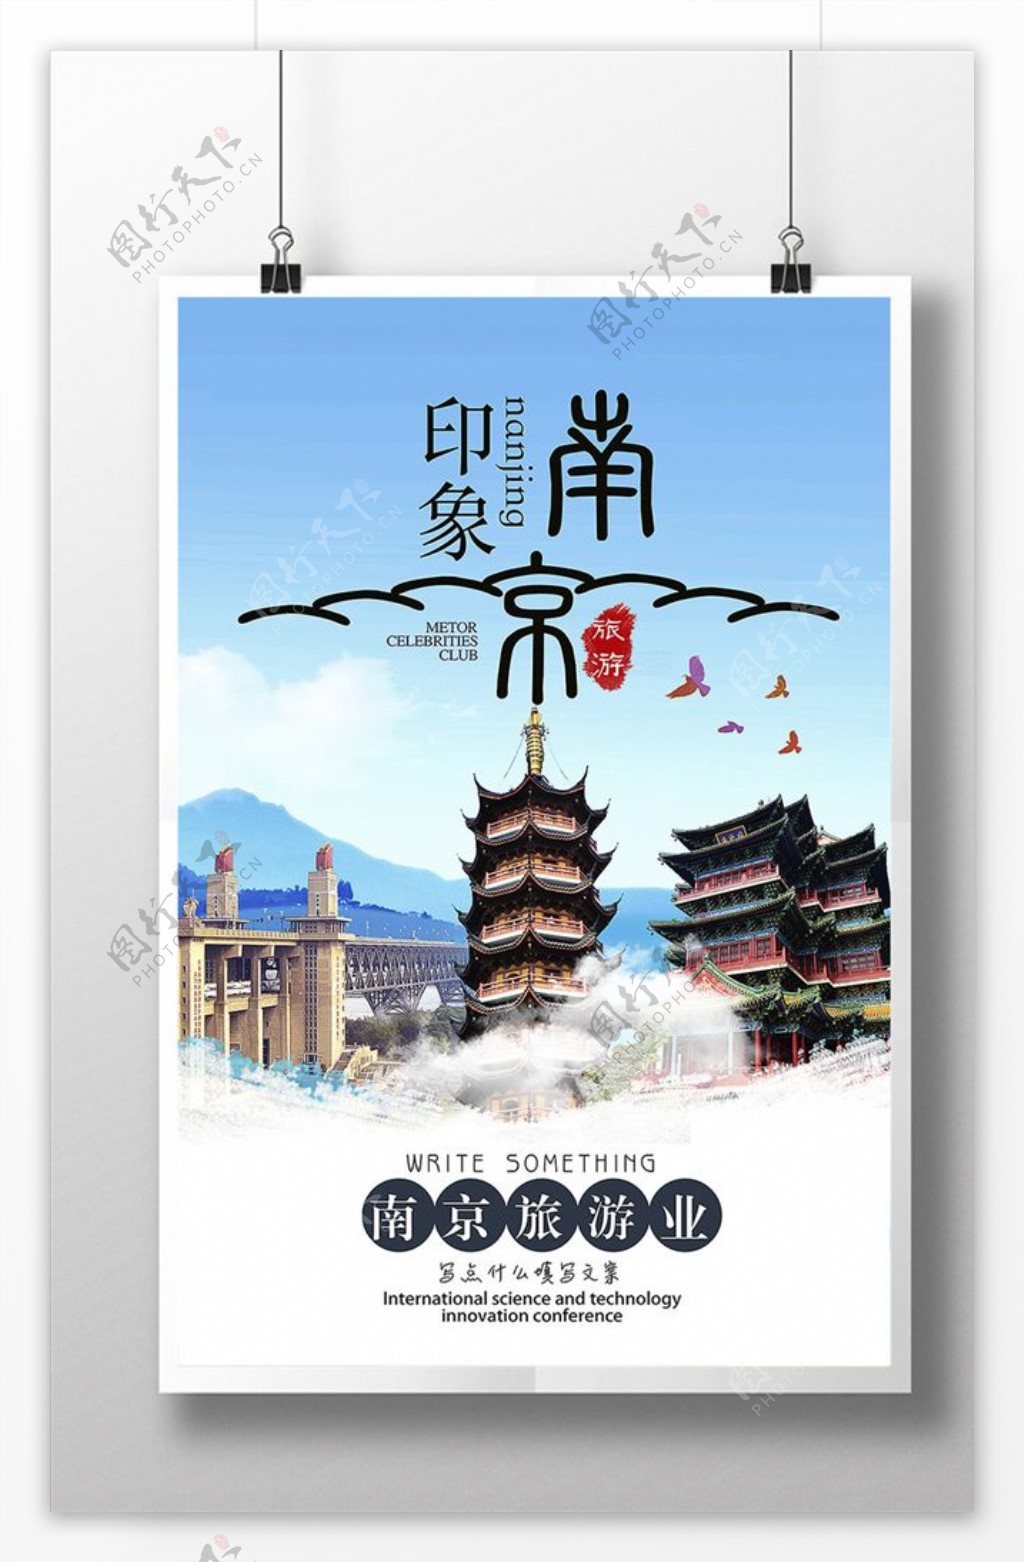 江苏南京旅游海报